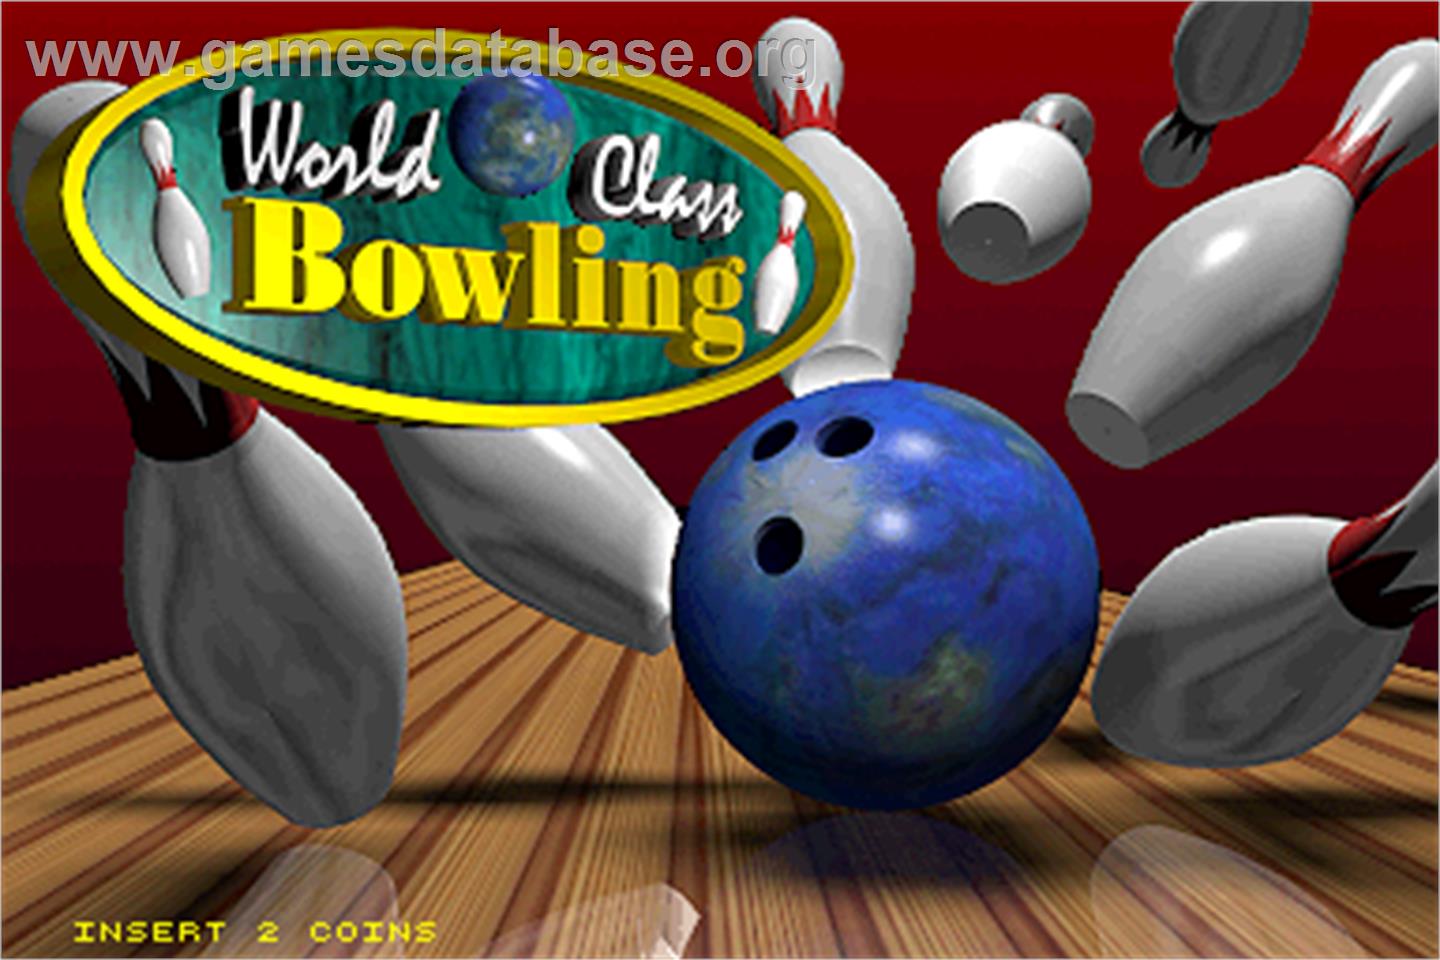 World Class Bowling - Arcade - Artwork - Title Screen